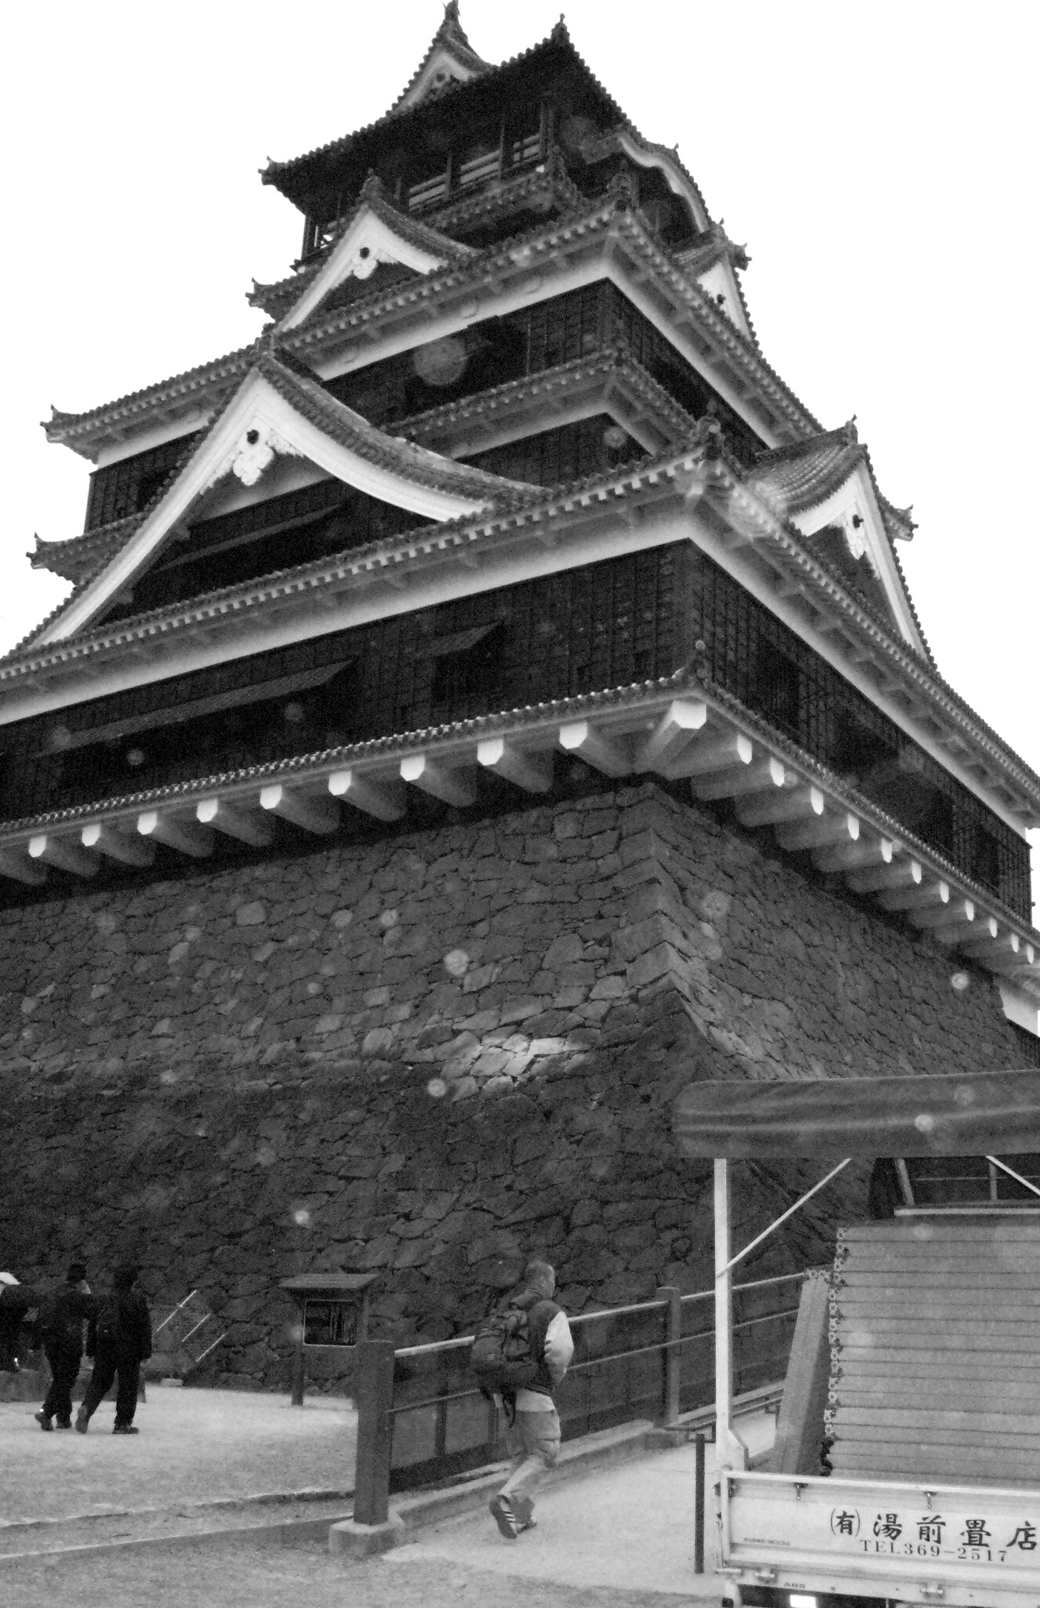 熊本城・本丸御殿の復元工事